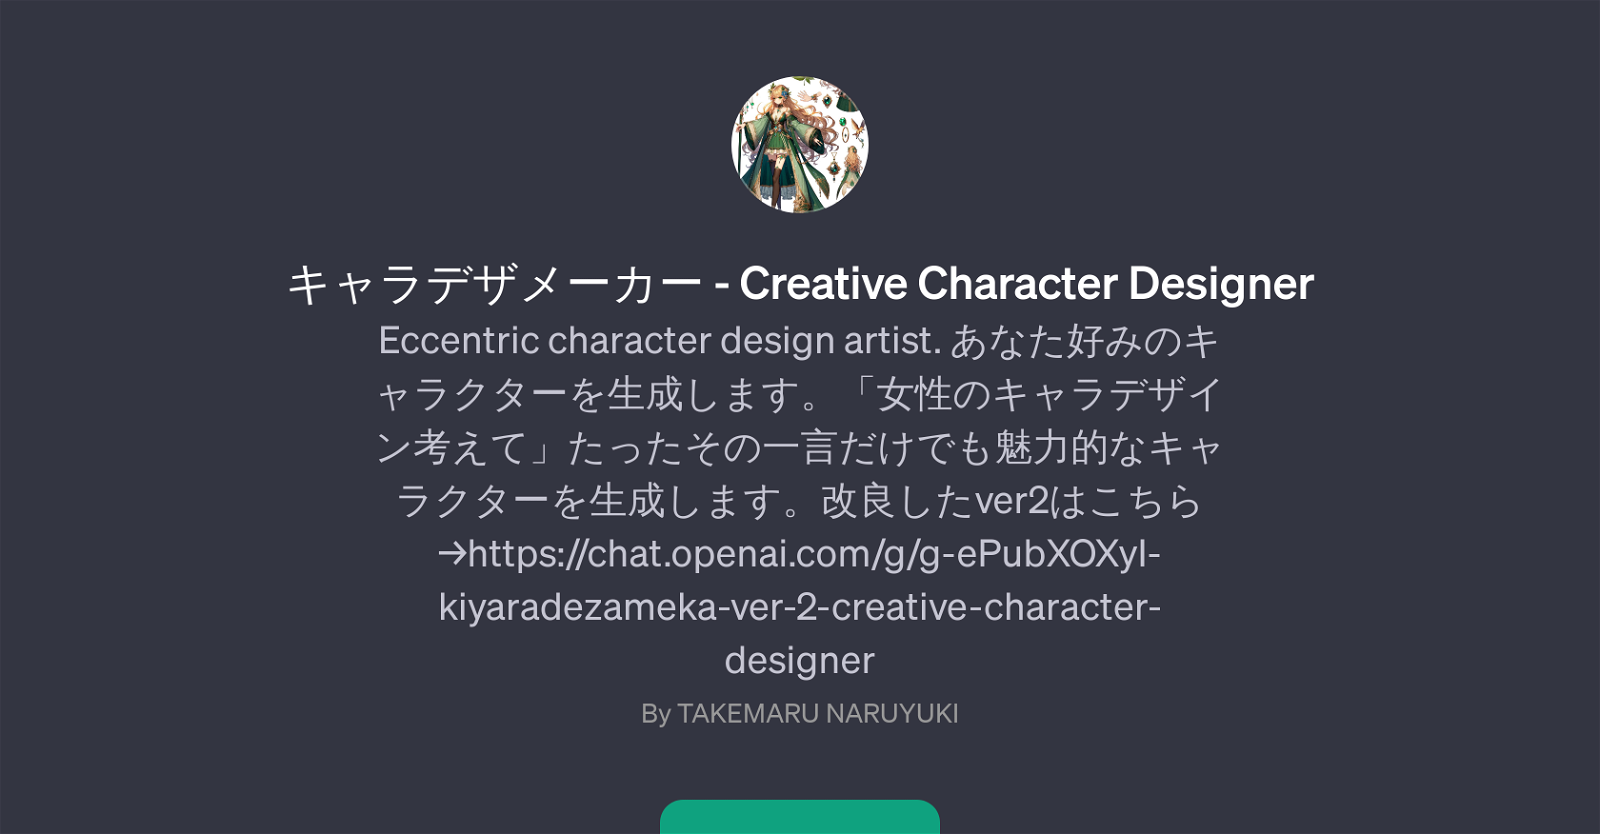 - Creative Character Designer website